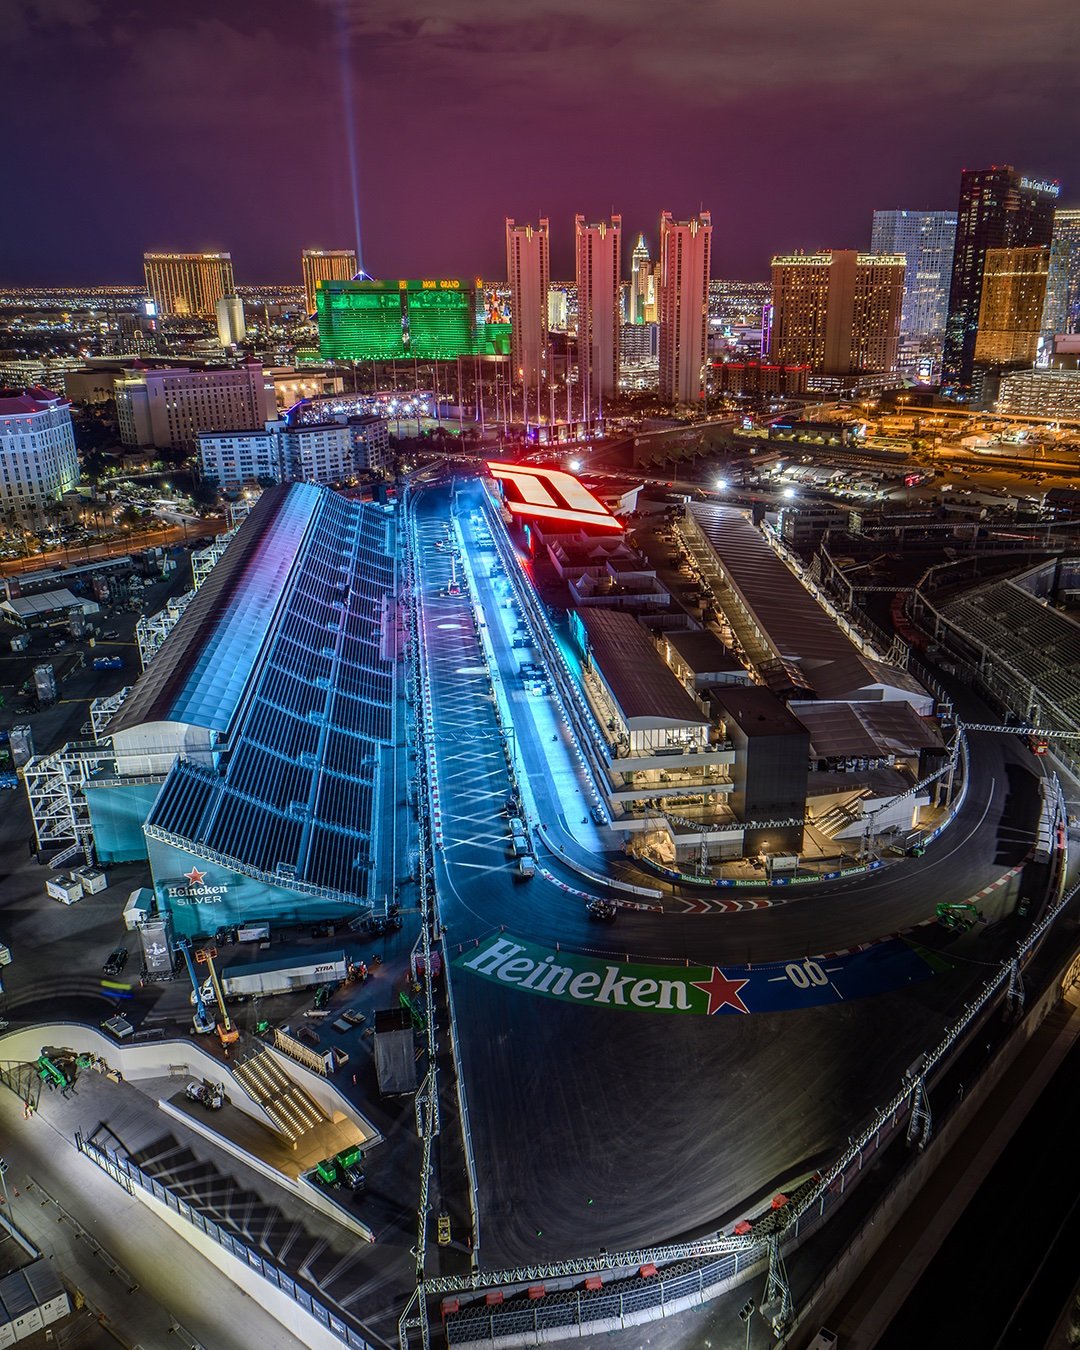 Las Vegas GP Paddock Building completed